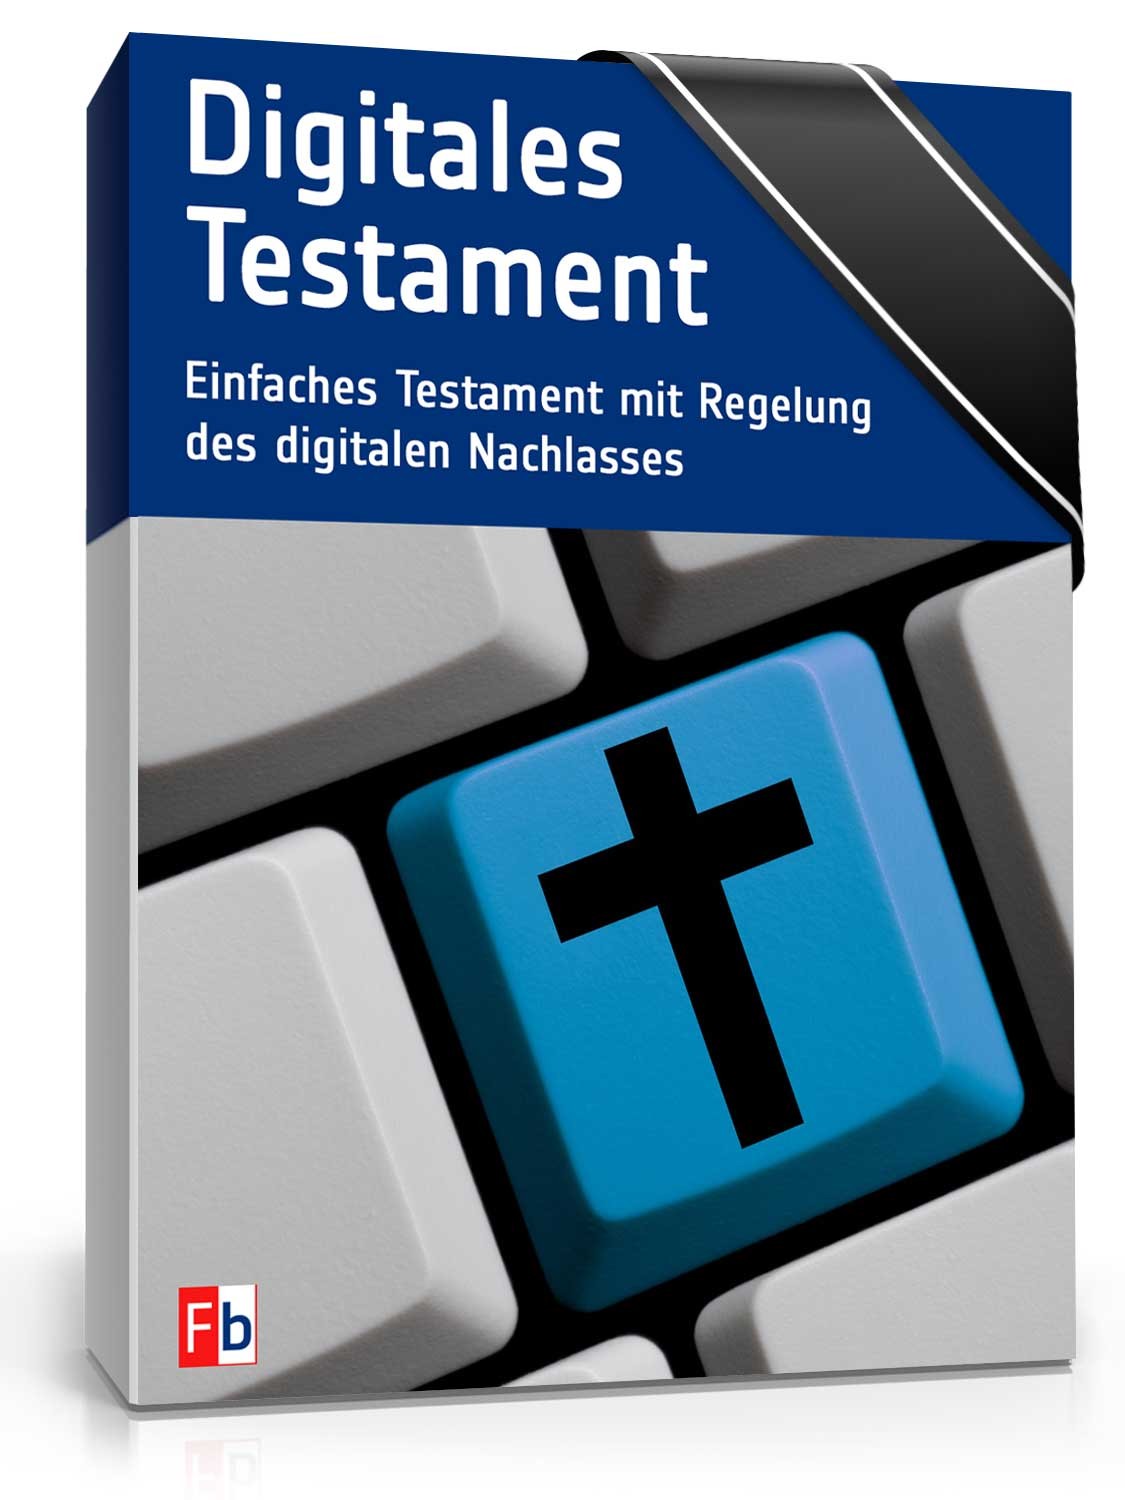 Hauptbild des Produkts: Digitales Testament plus Ratgeber